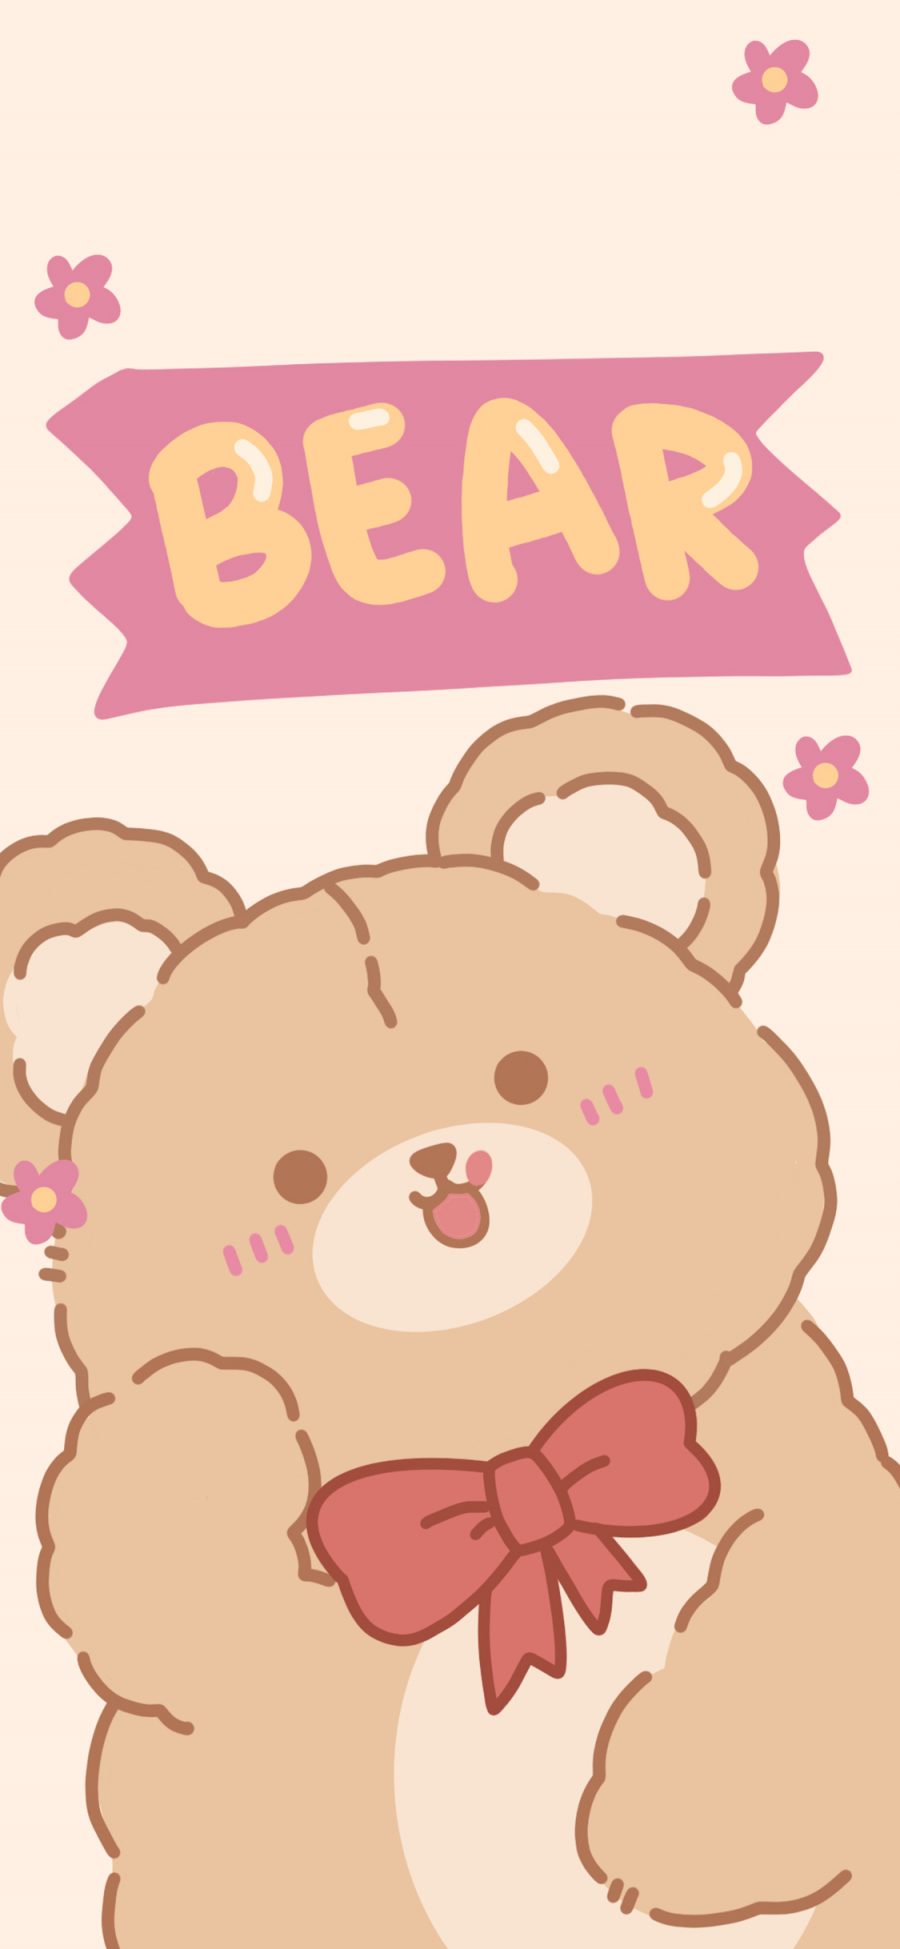 [2436×1125]卡通 小熊 蝴蝶结 bear 苹果手机动漫壁纸图片